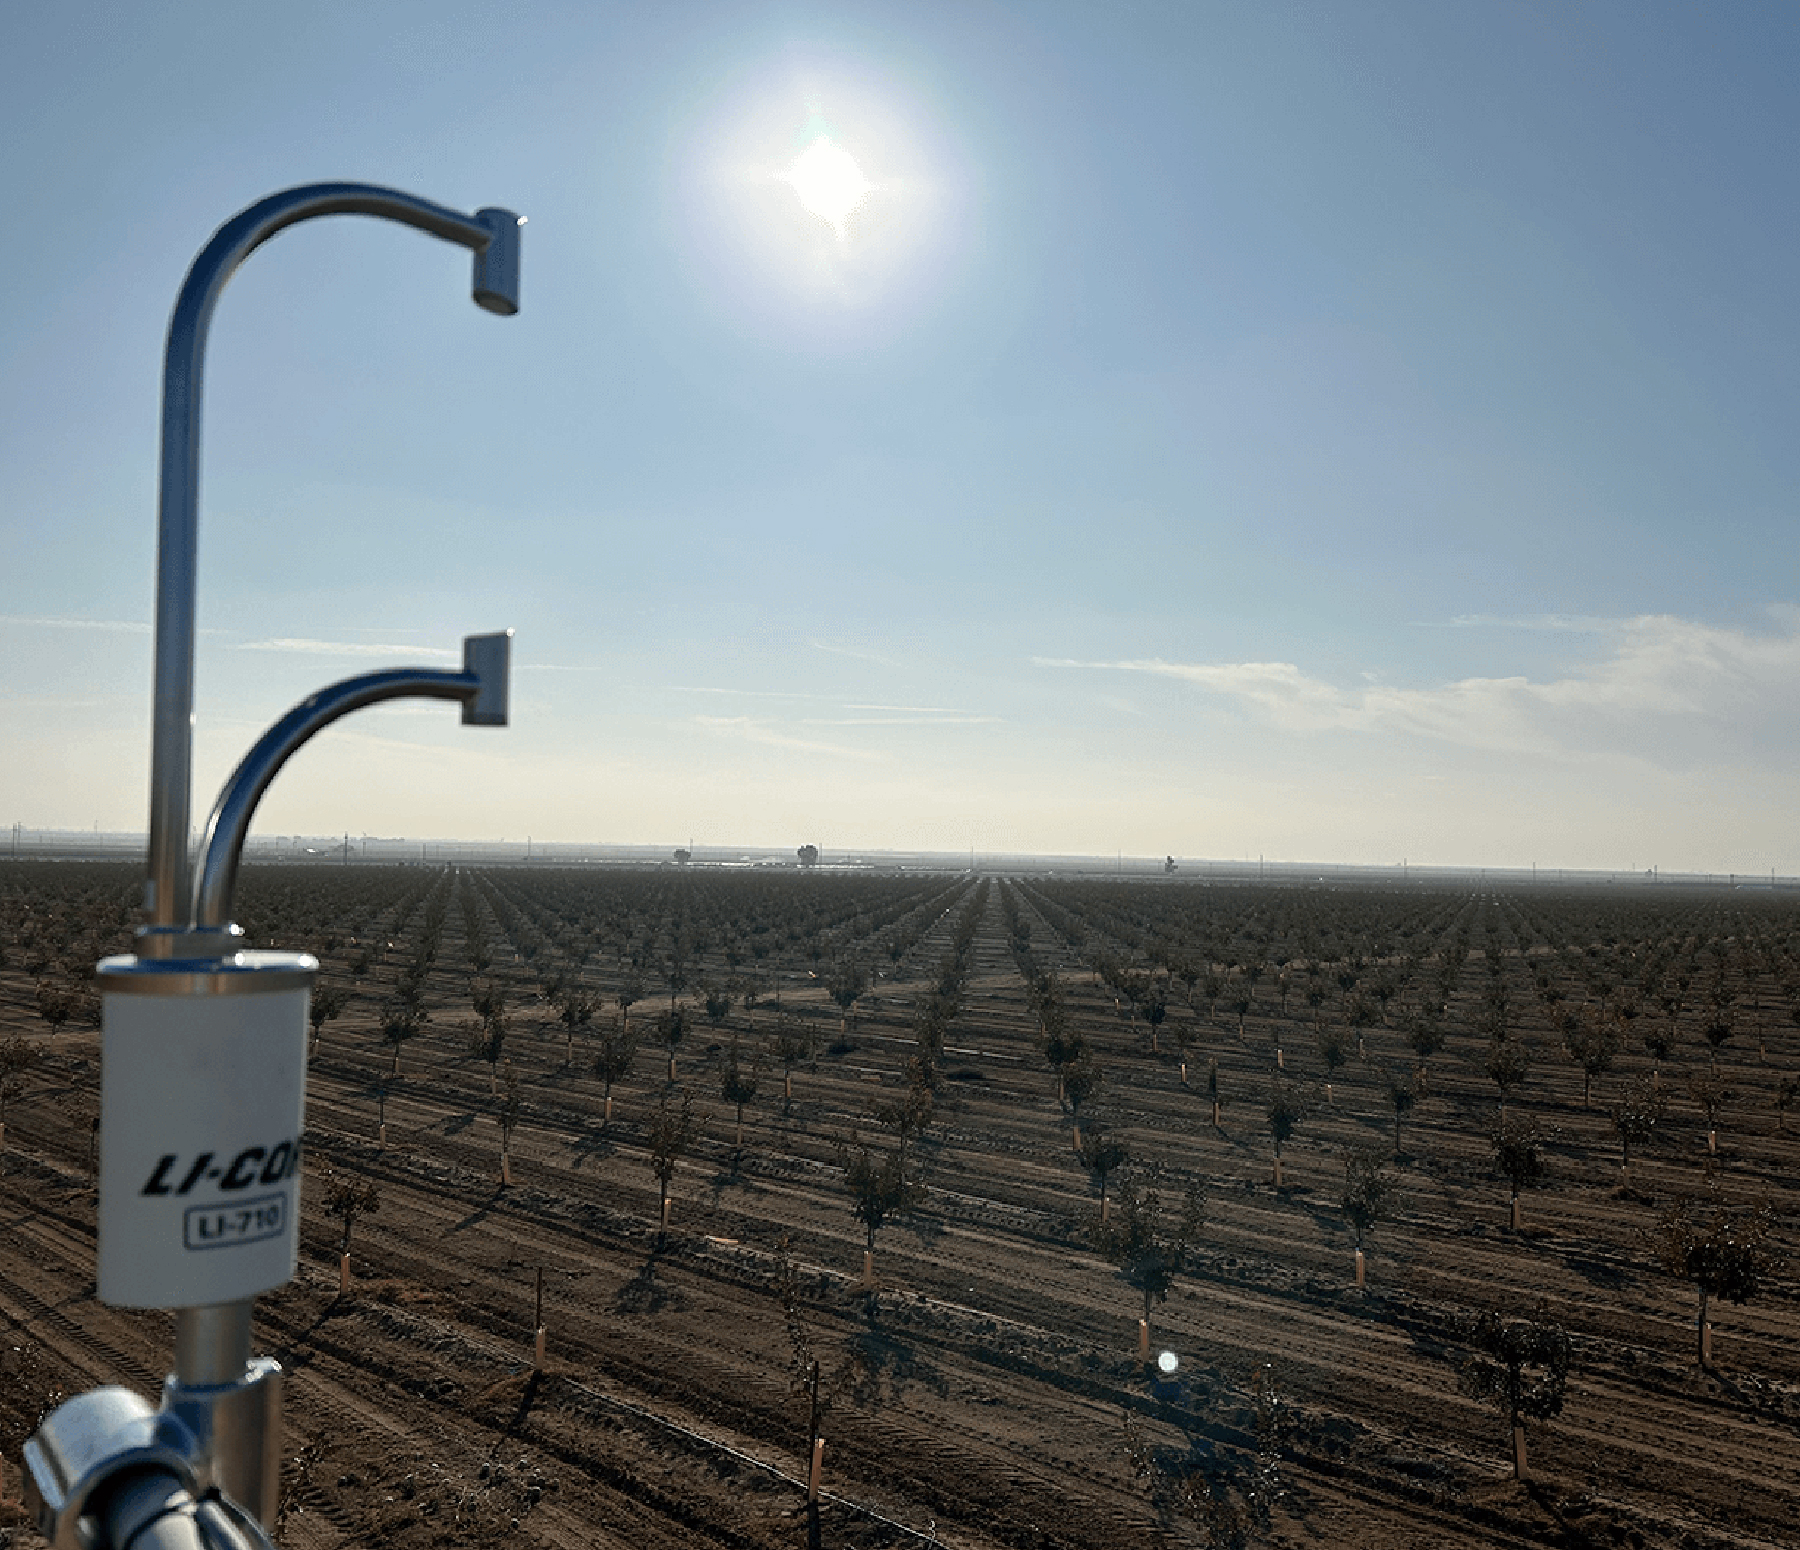 LI-710Land IQ:カリフォルニアにおけるフィールド規模での水使用の追跡画像